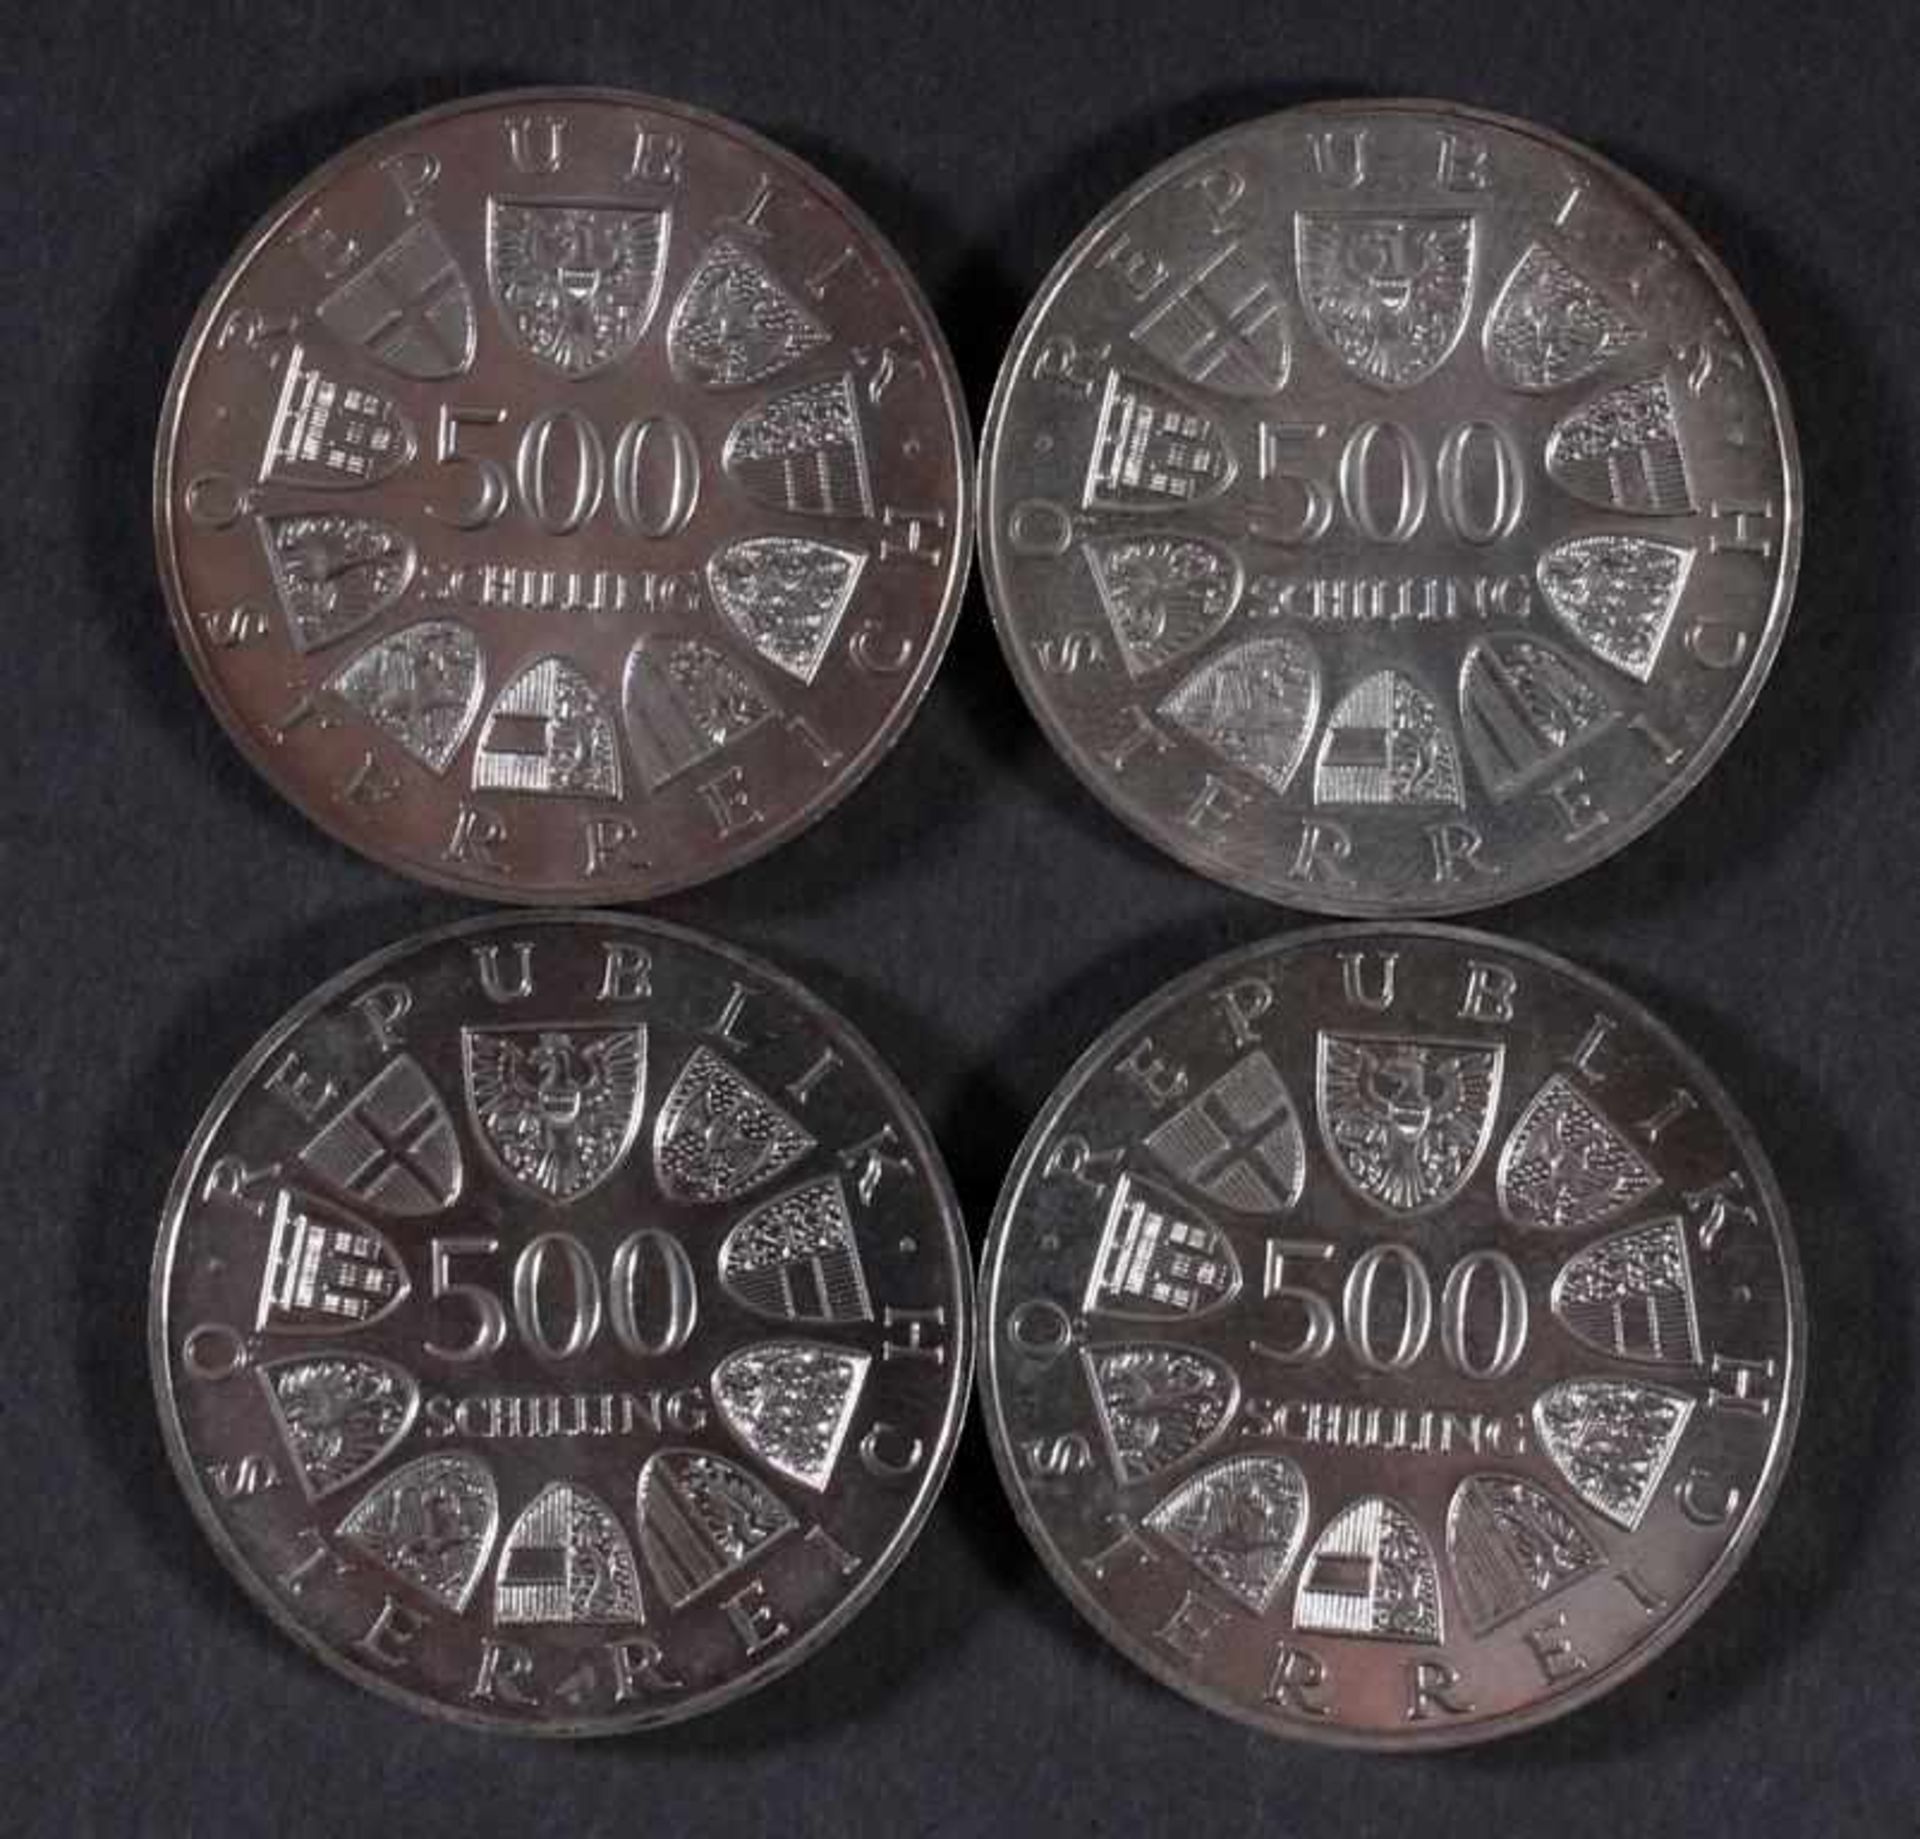 Österreich 2. Republik, 4 Stück 500 Schilling Münzen von 1984 - Image 2 of 2